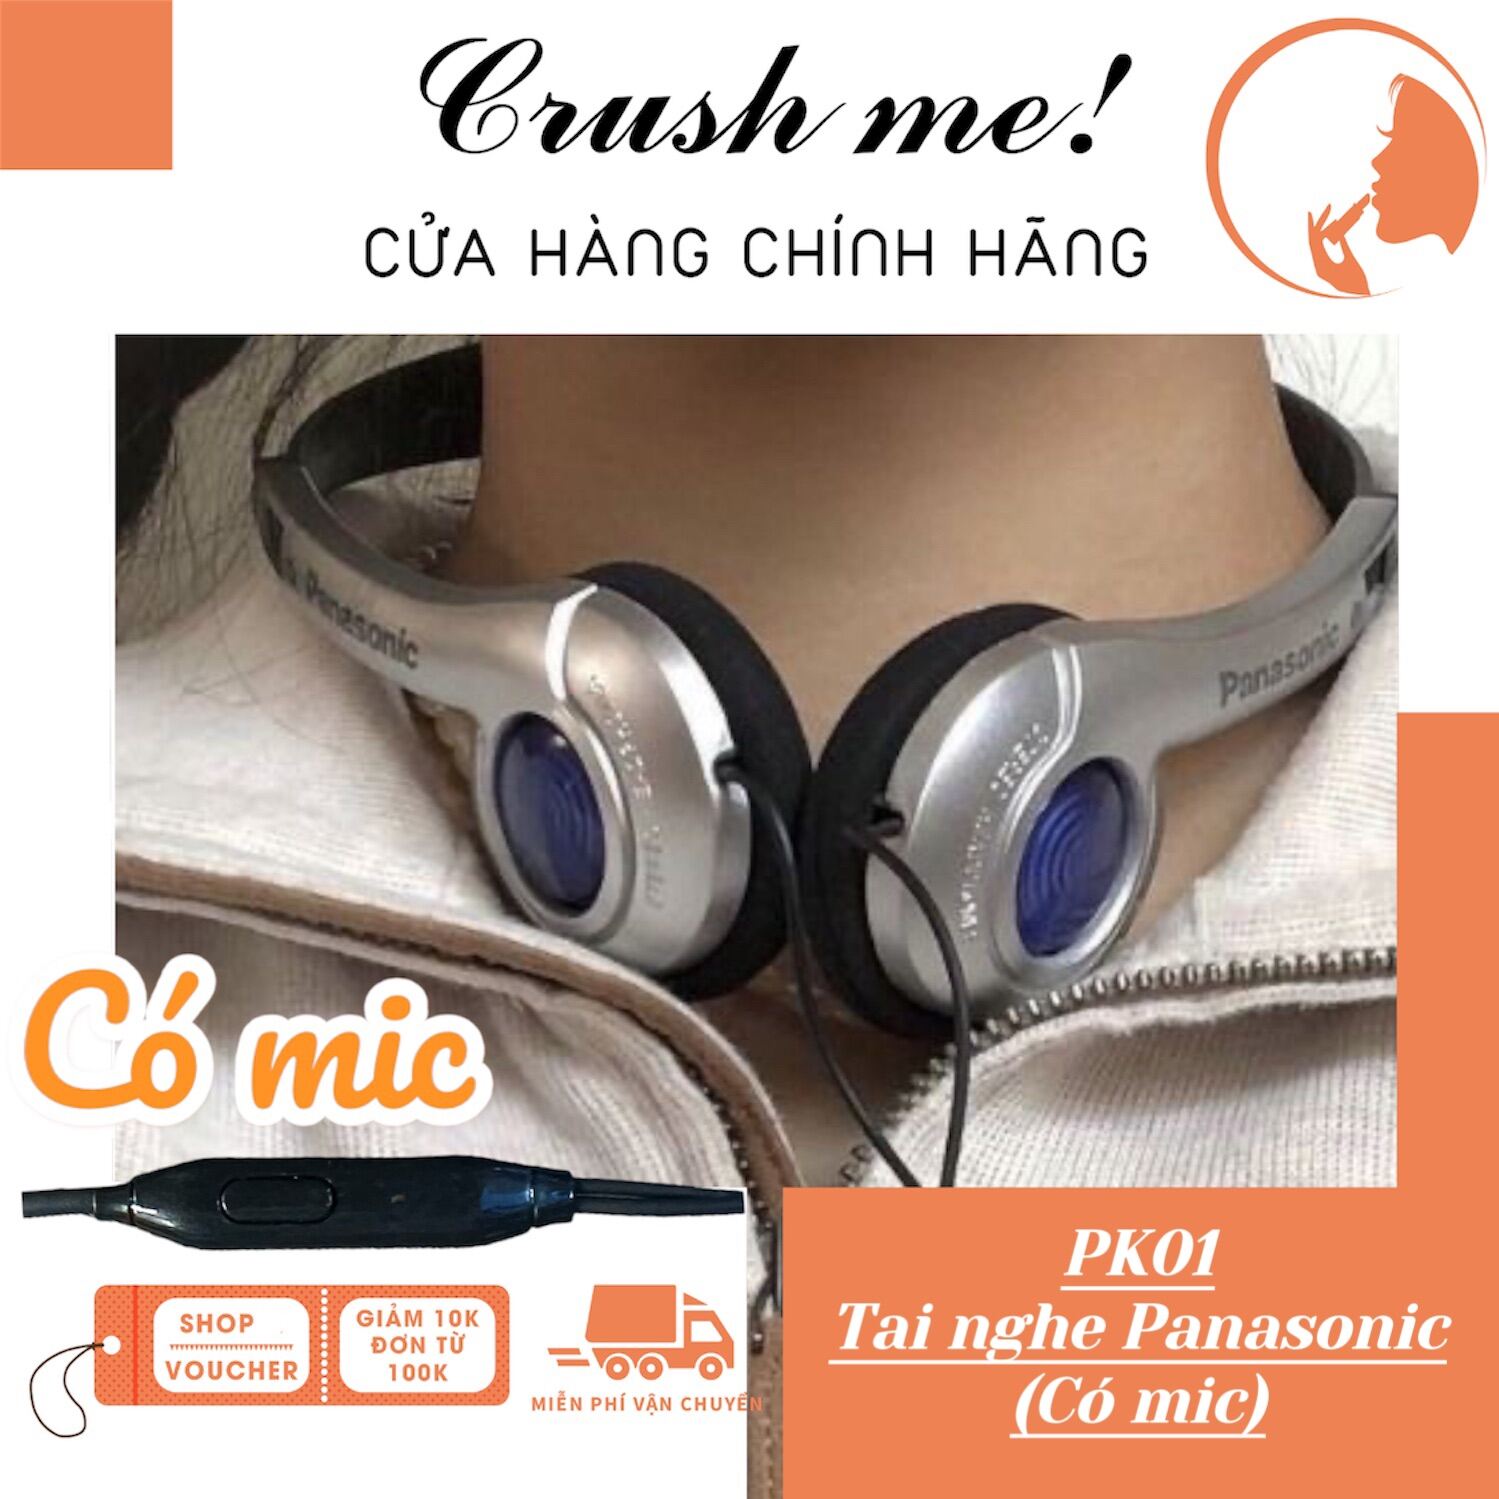 Crush me! PK01 Tai Nghe Panasonic có mic retro âm thanh Hifi - cân bằng 3 dải âm, phong cách y2k cổ điển headphones hiphop